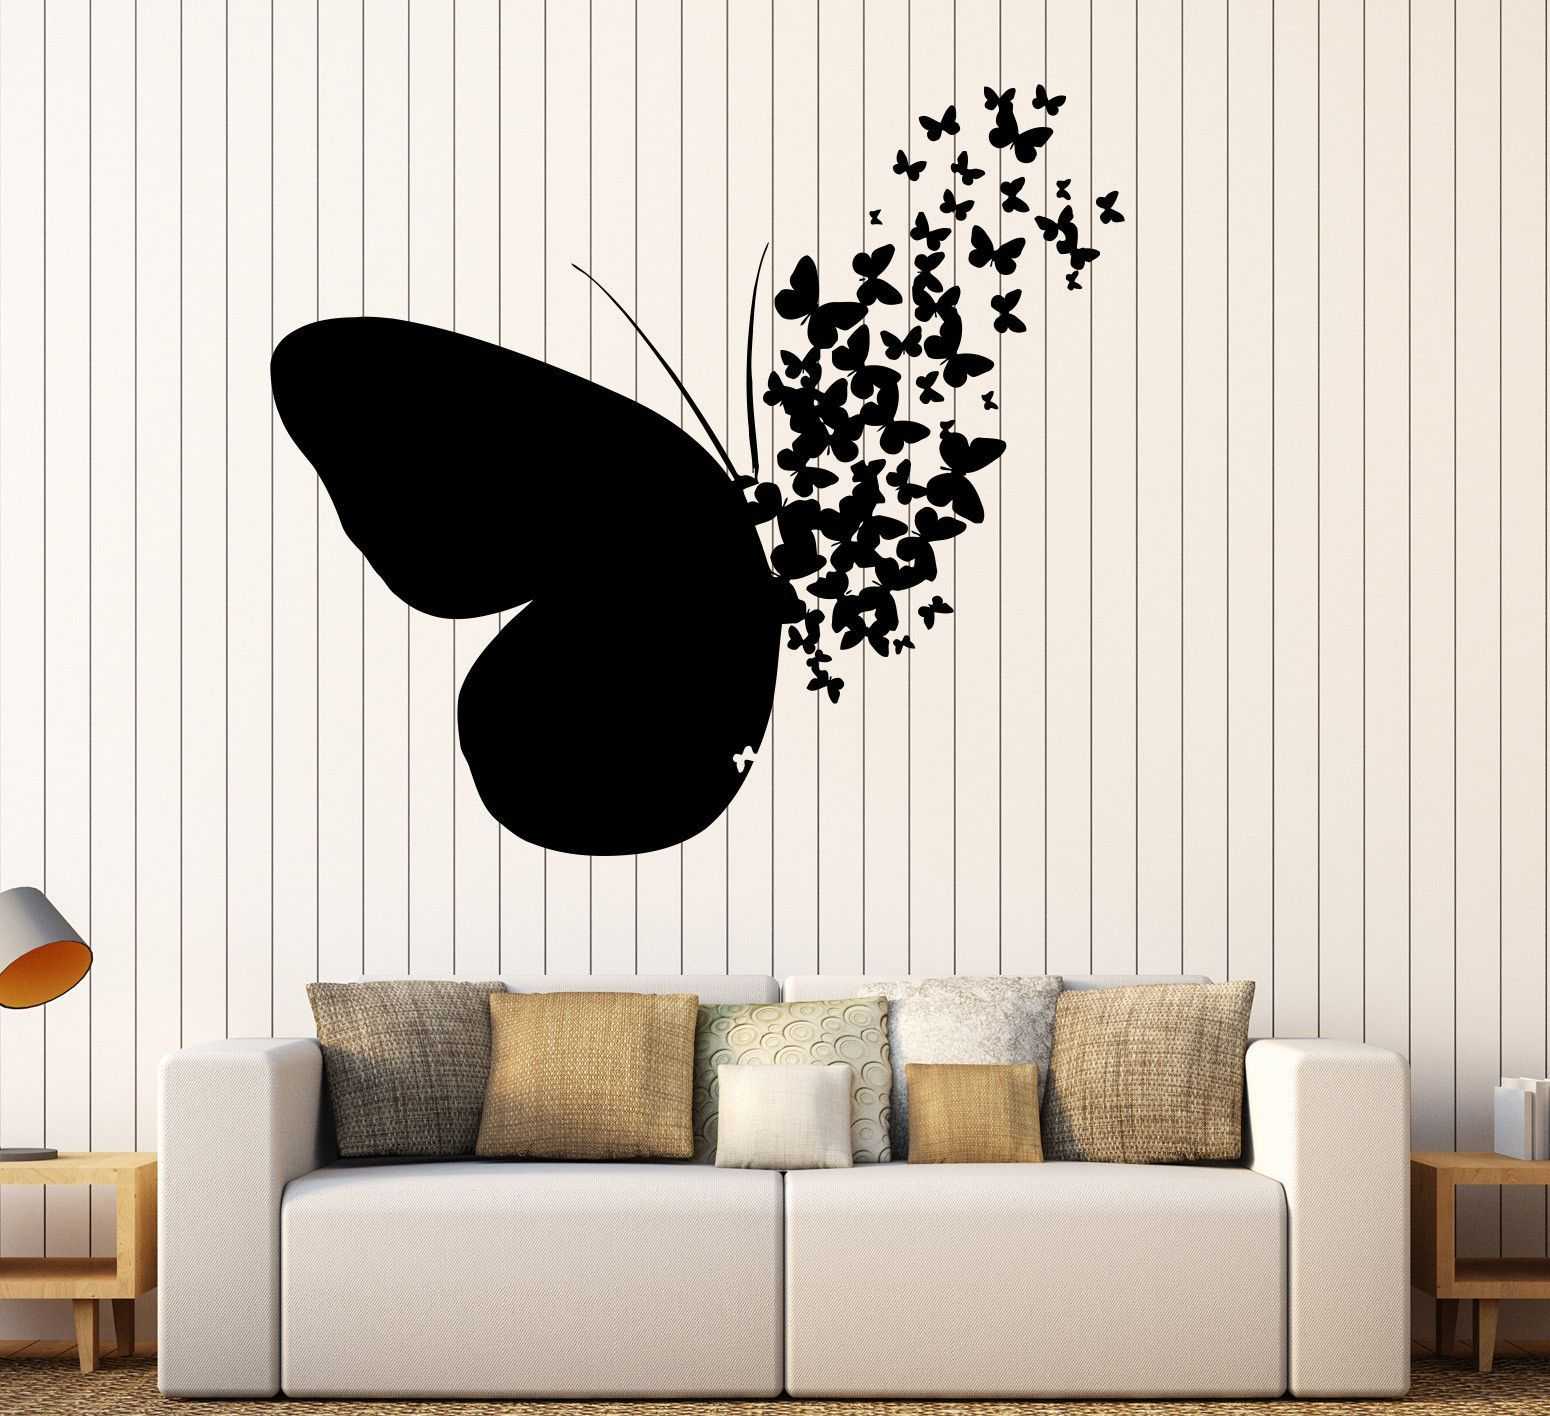 Оформление стены бабочками по трафарету